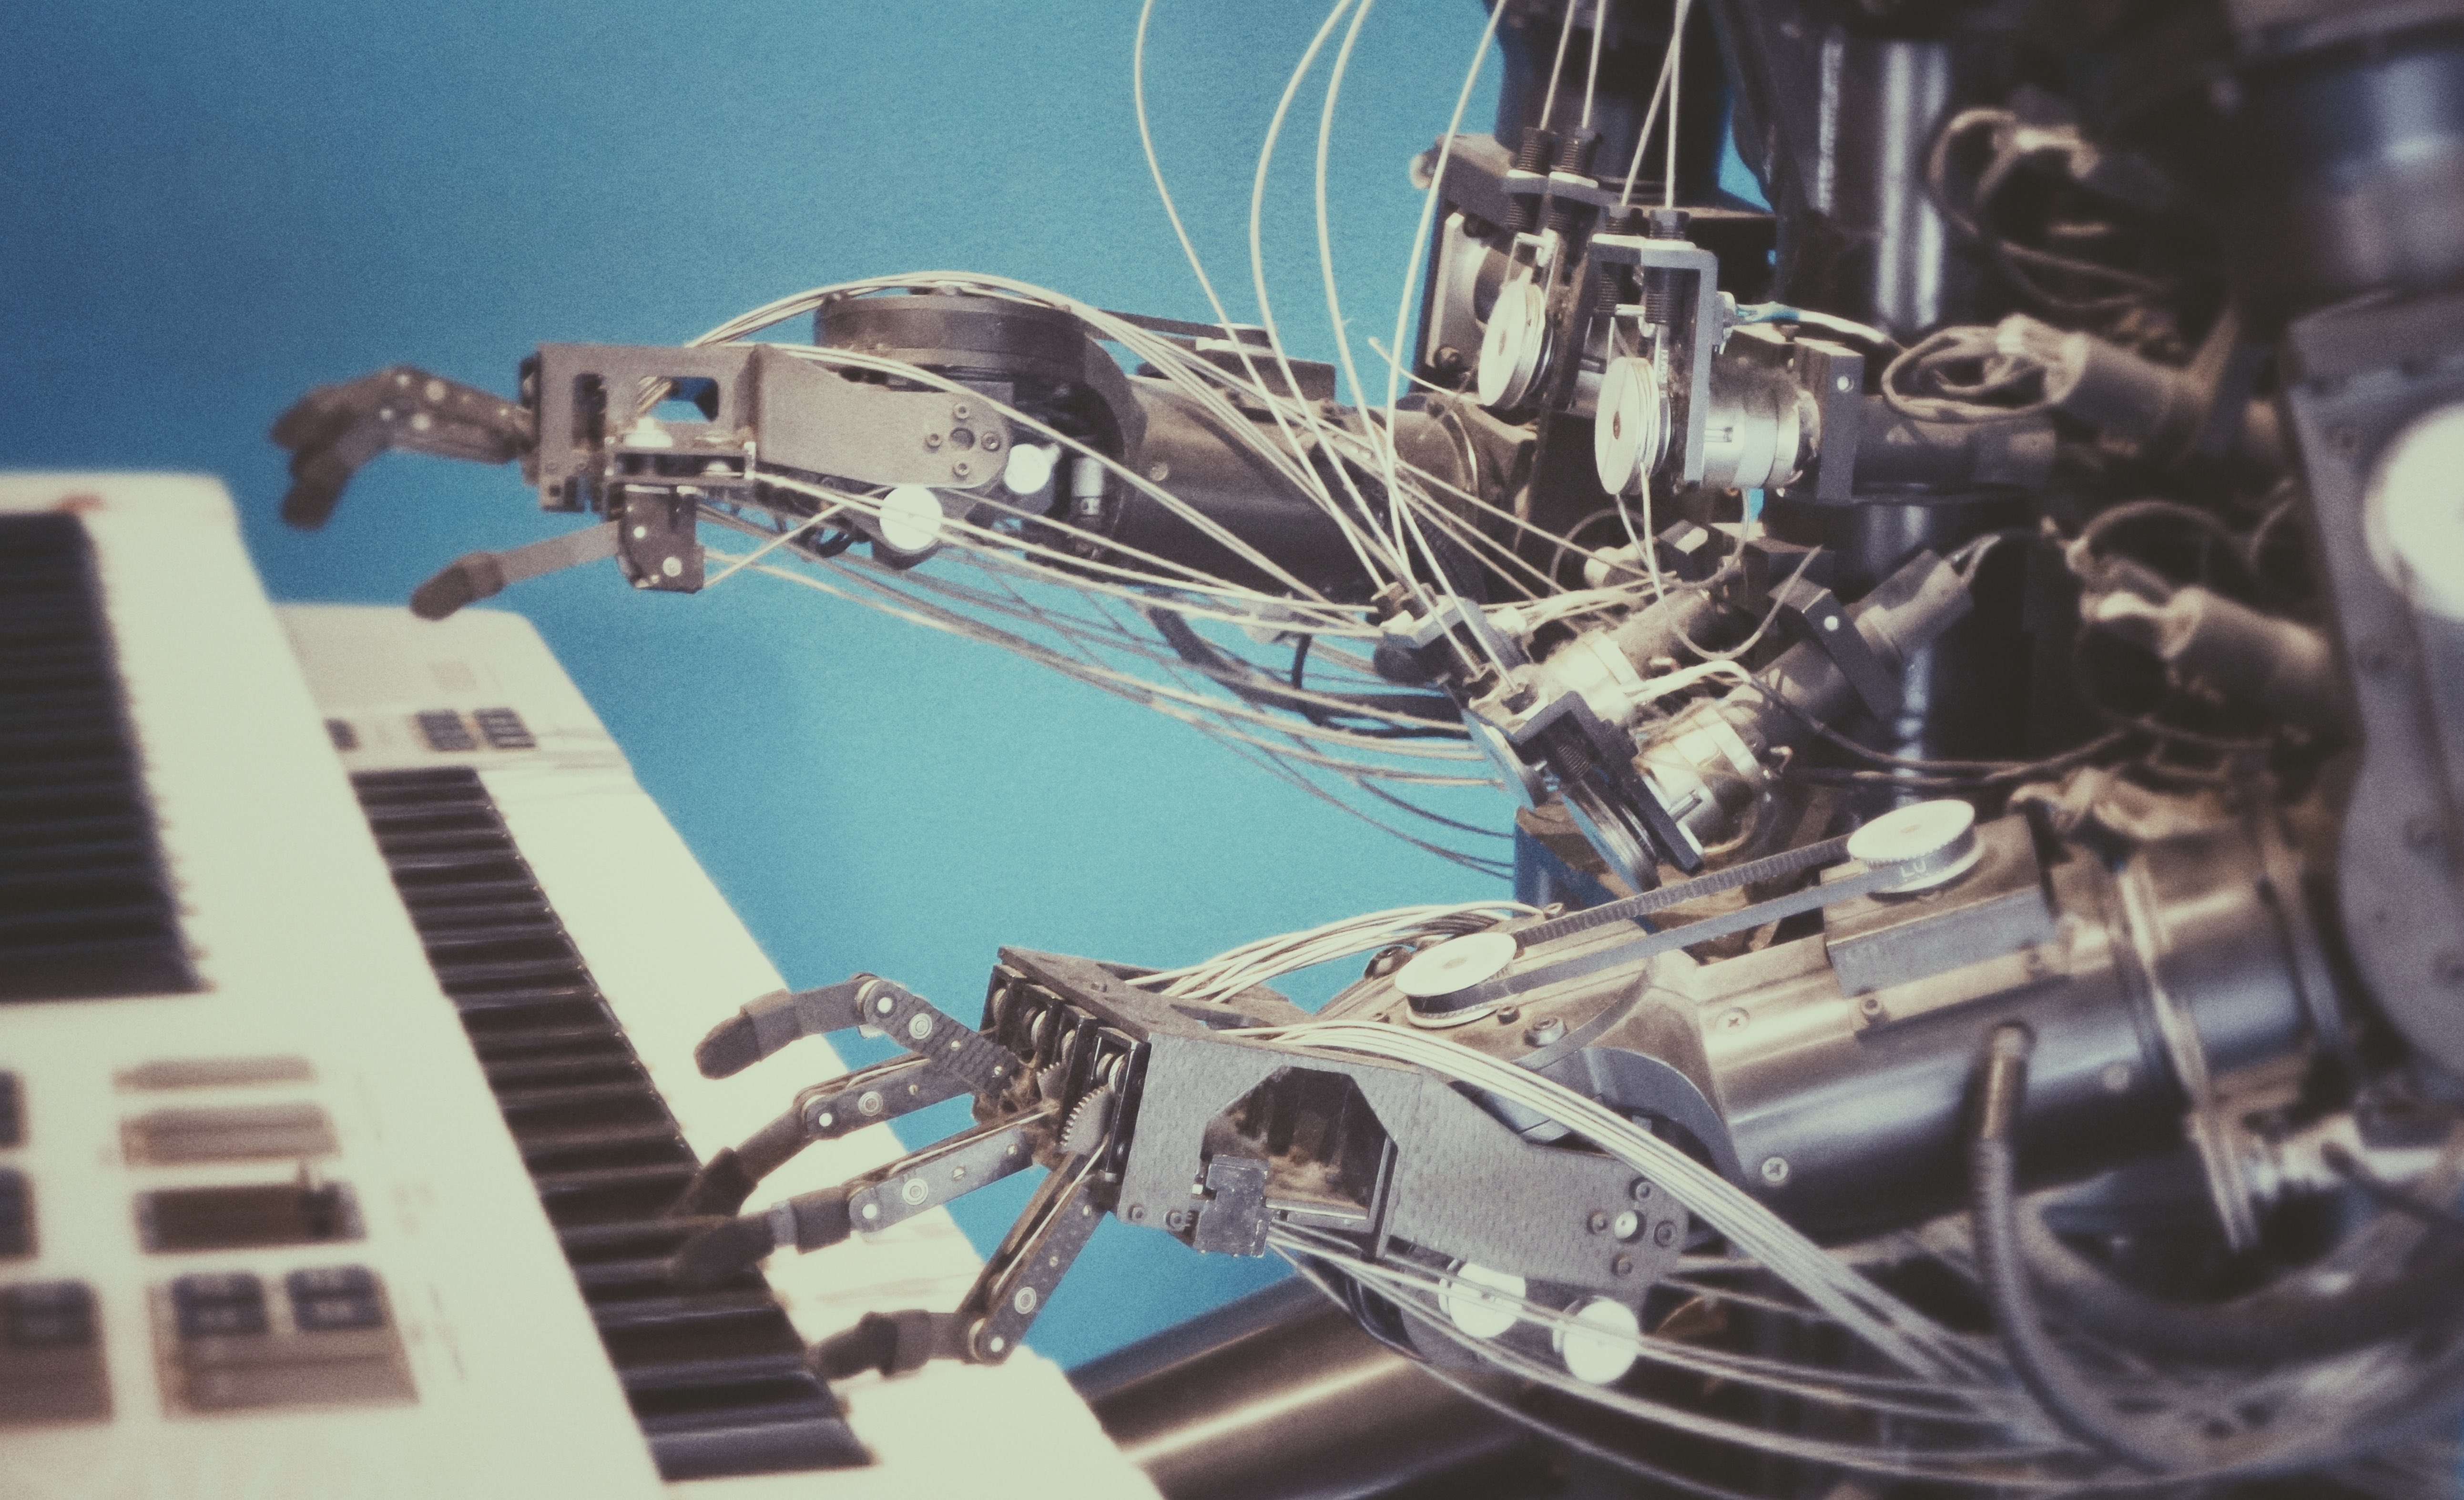 Ии для написания песен. Робот музыкант. Машинное творчество. Роботы заменят людей. Искусственный интеллект в Музыке.